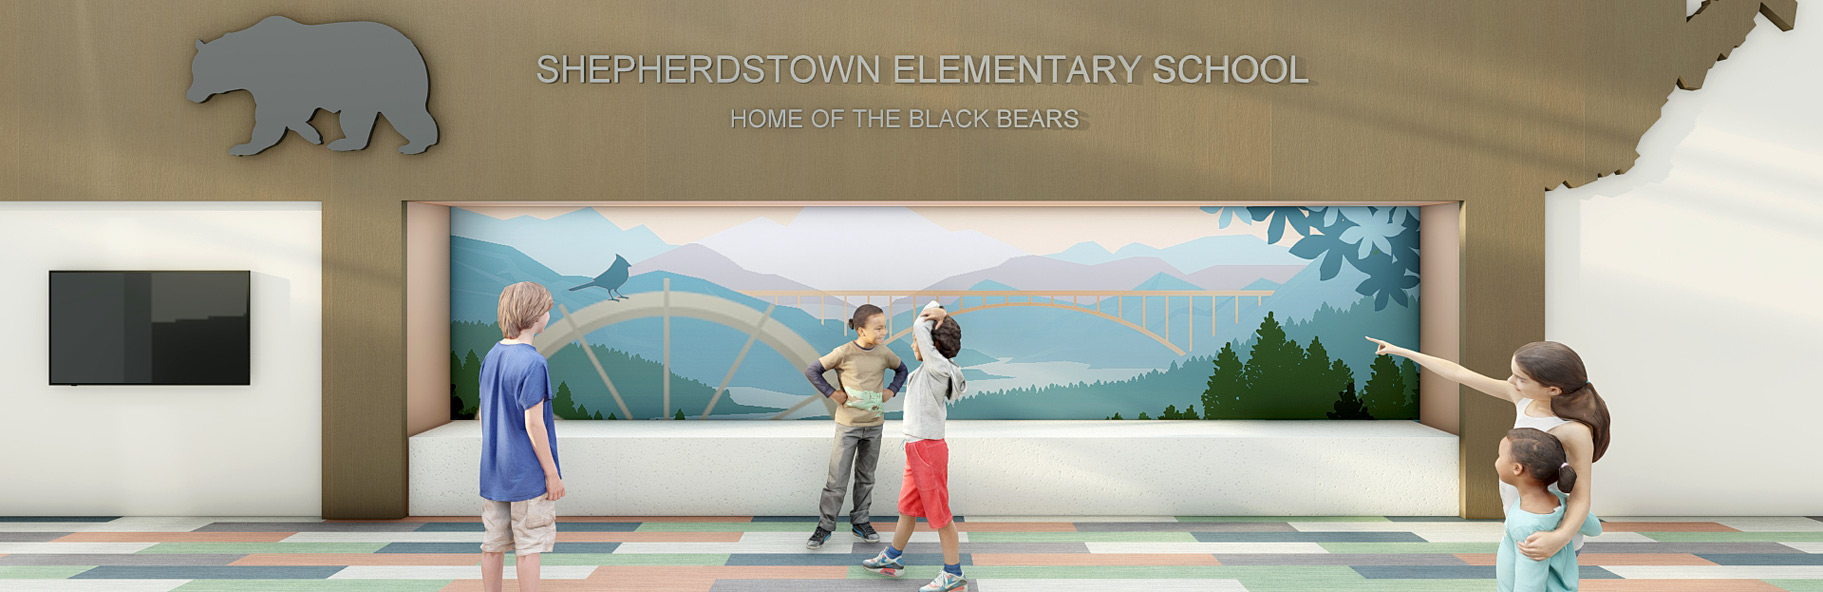 Shepherdstown Elementary School